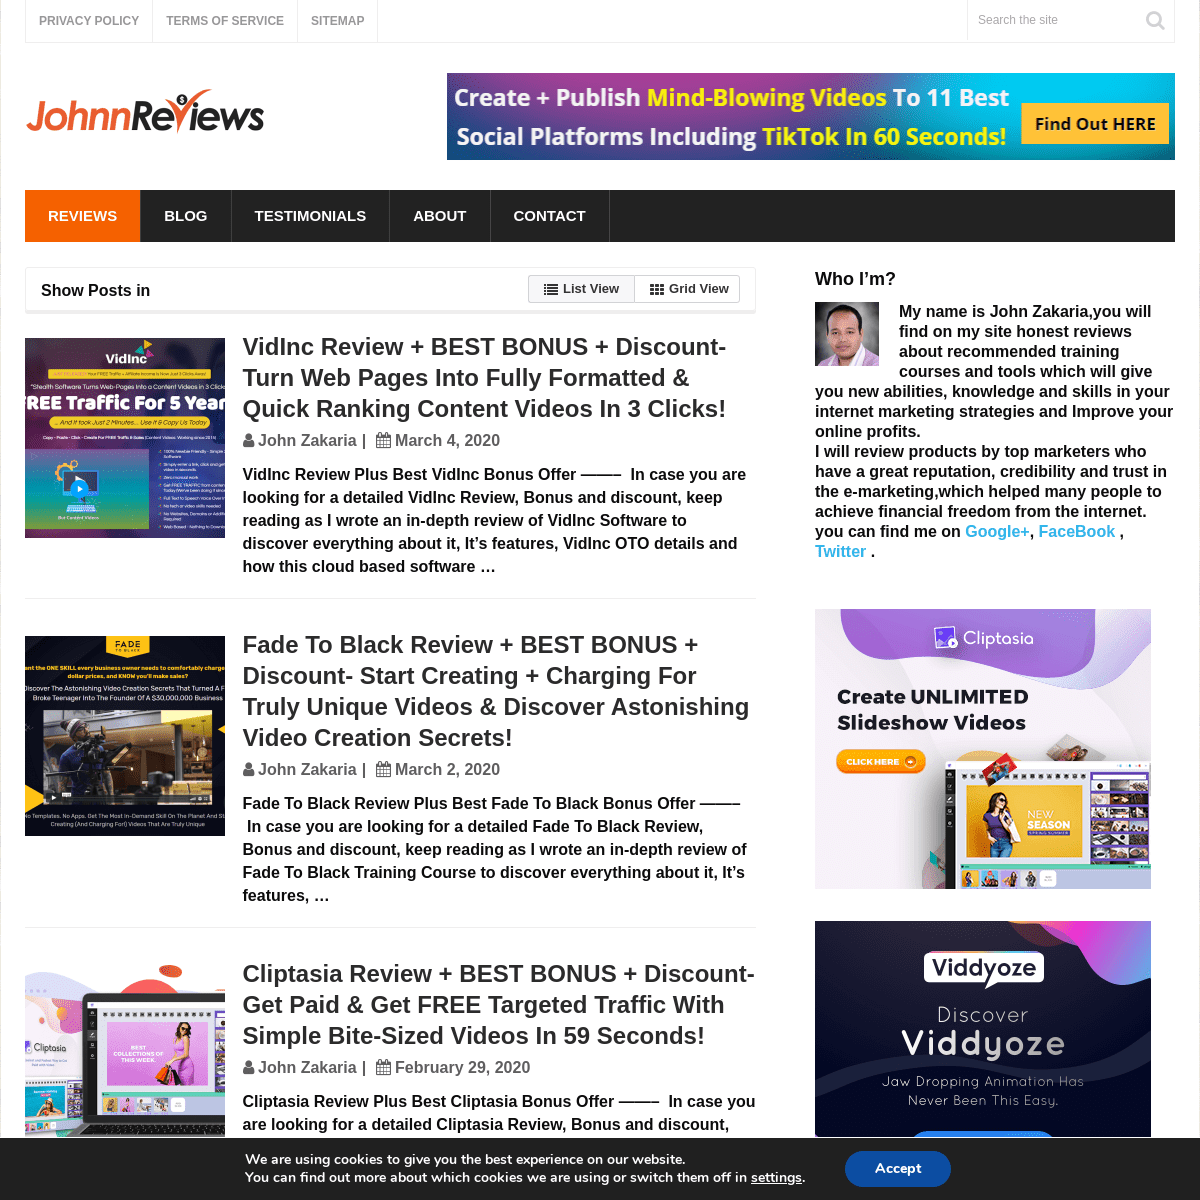 A complete backup of johnnreviews.com